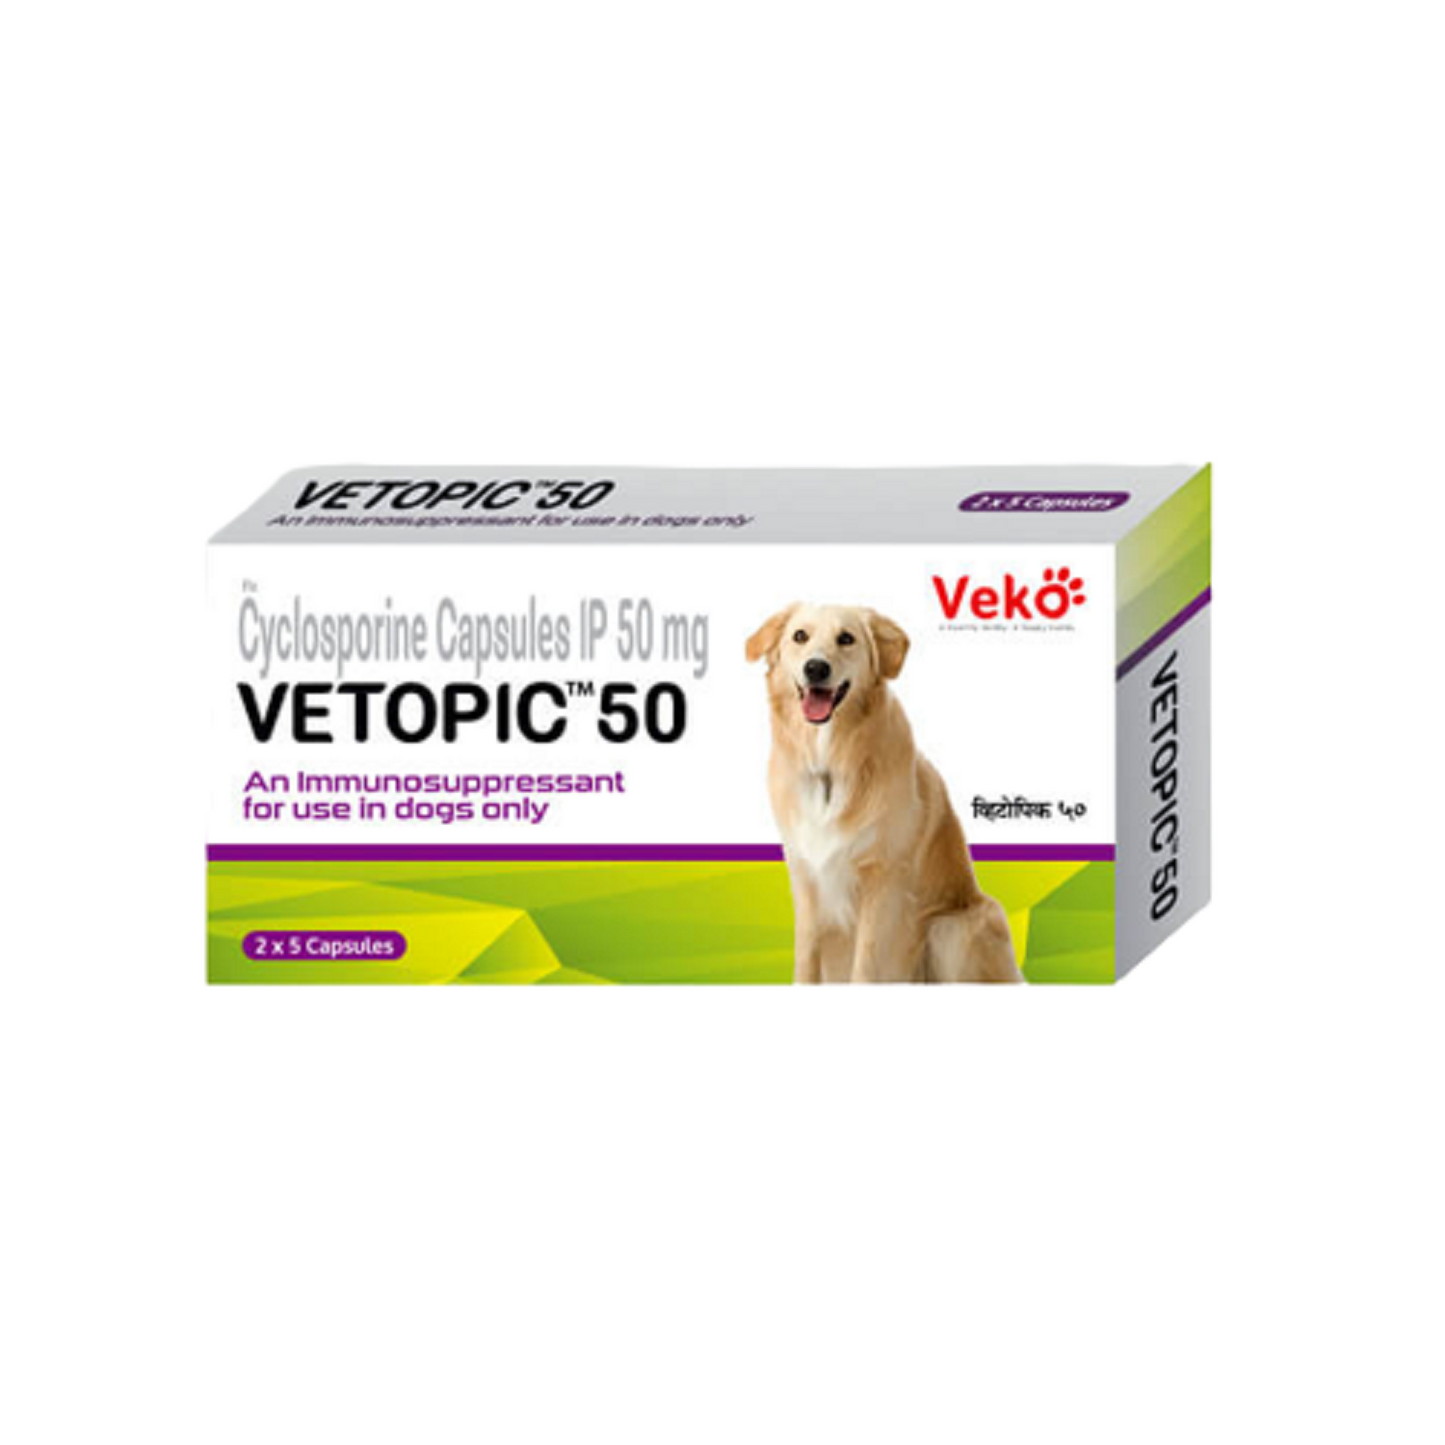 Veko Care - Vetopic Capsules